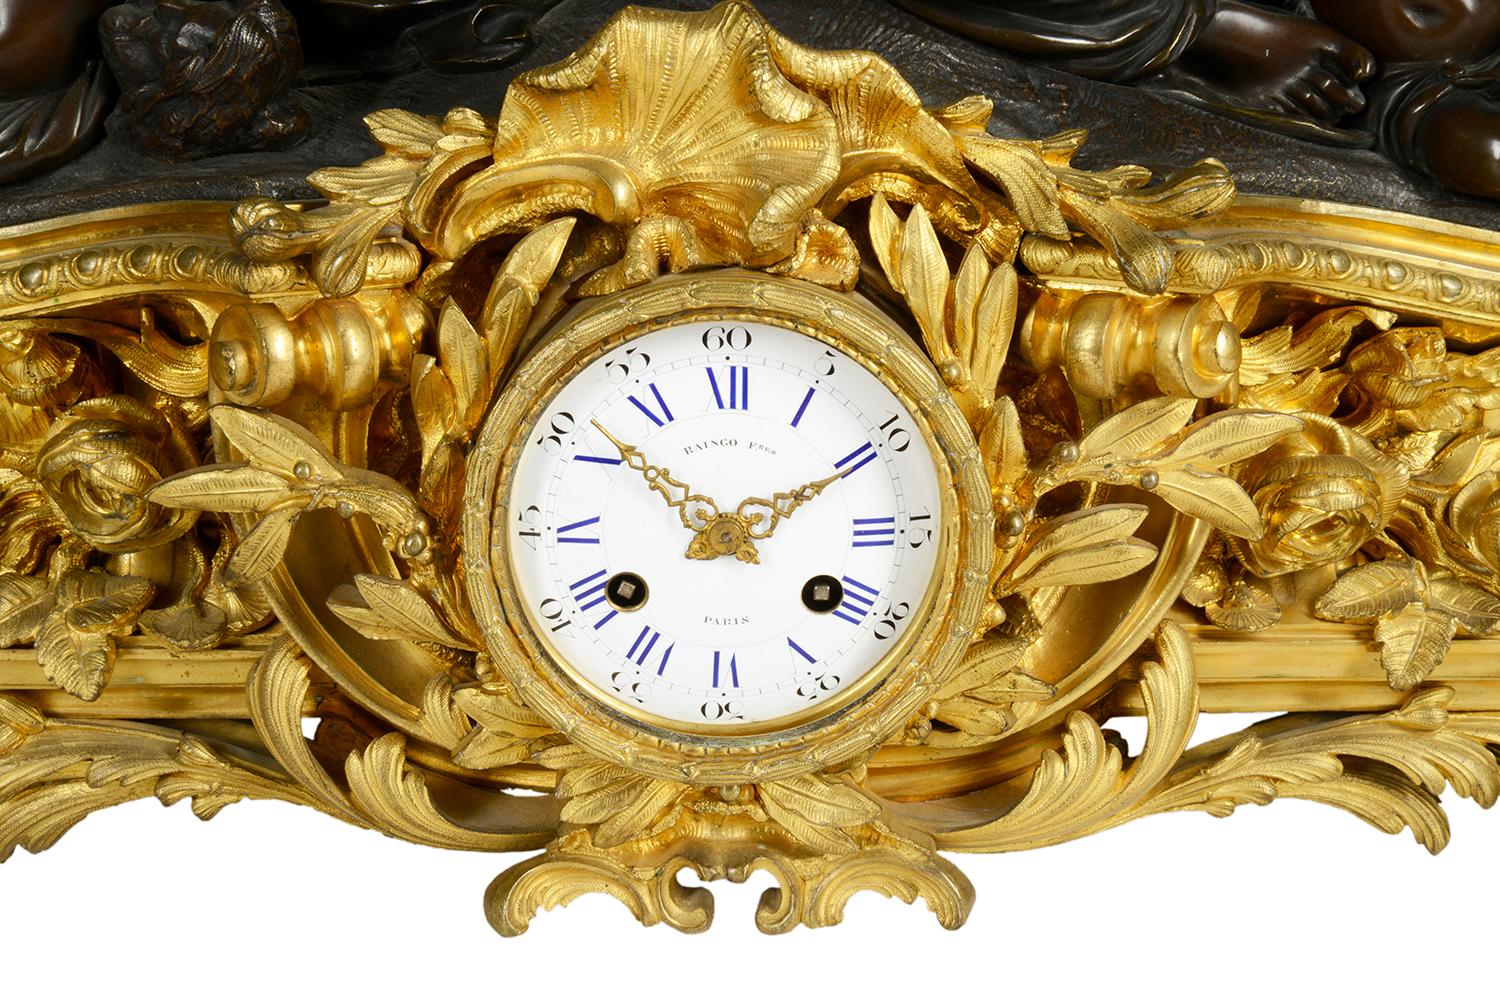 Garniture d'horloge en bronze doré et patiné de belle qualité, datant du XIXe siècle, composée d'une paire de candélabres à sept branches ressemblant à des fleurs, soutenus par des putti, et reposant sur des socles circulaires à décor de